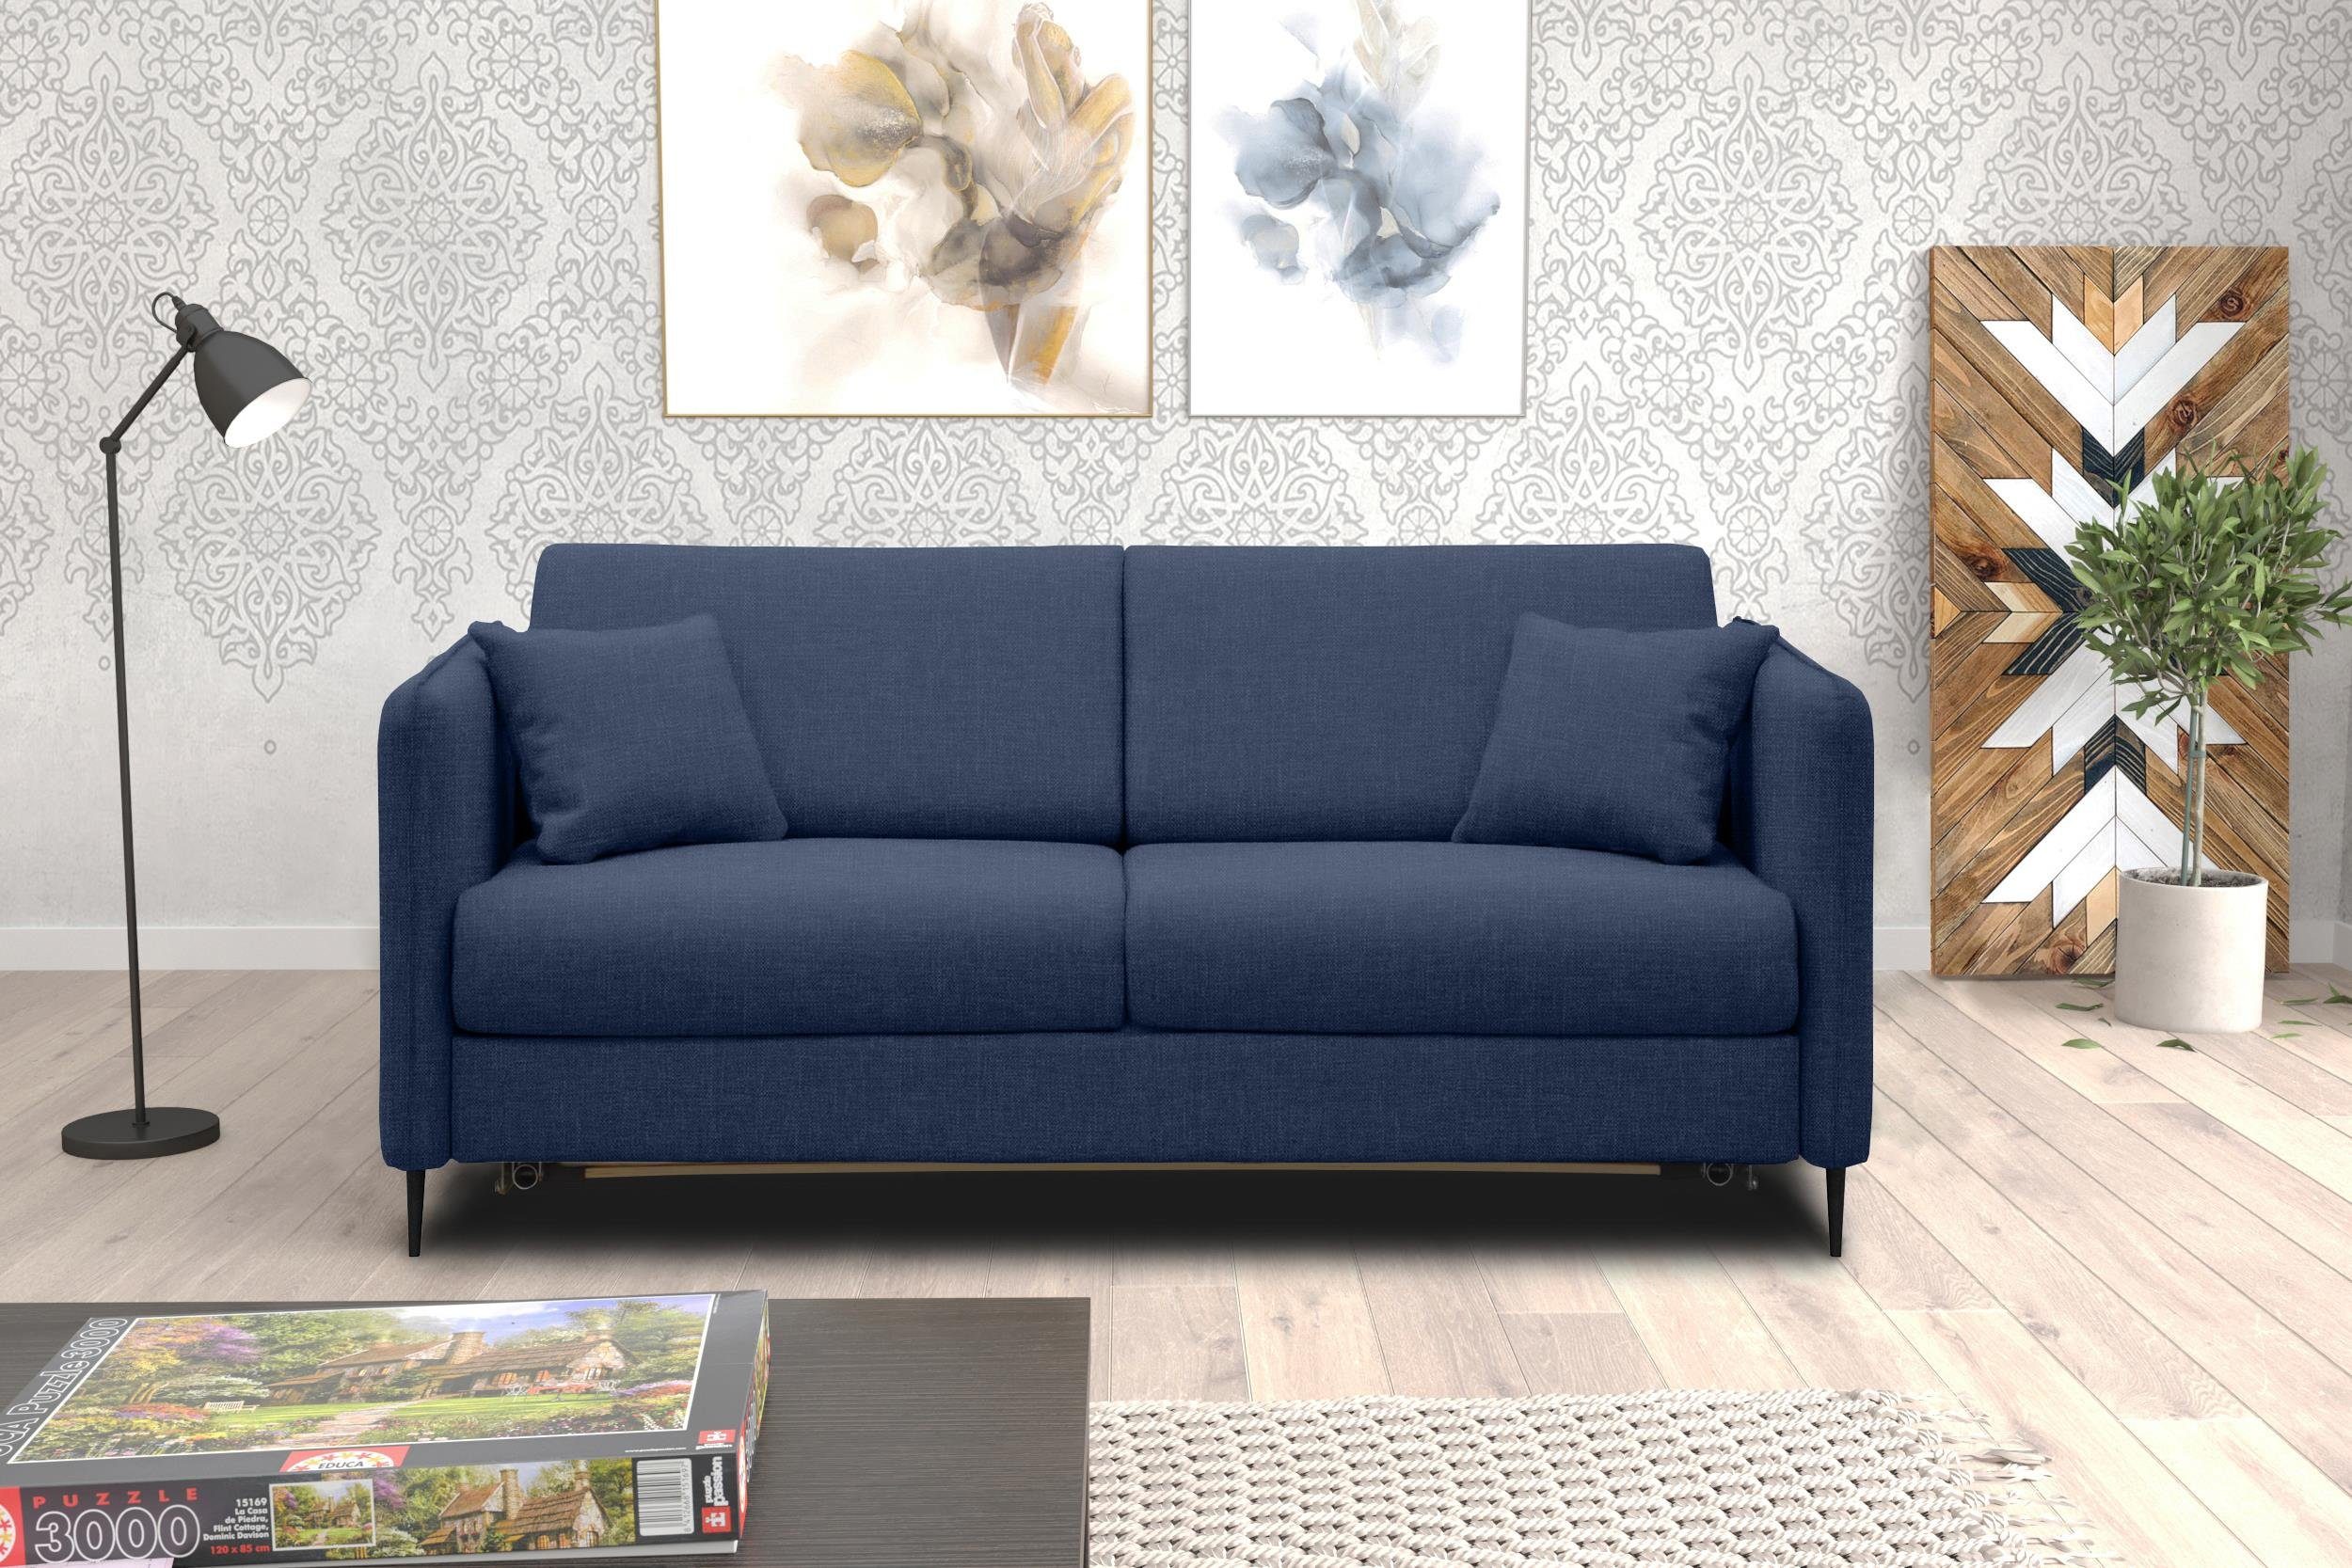 stellbar, Metall 3-Sitzer 2-Sitzer, Stylefy Sofa, Modern frei Raum Arnold, Bettfunktion, im Design, mit